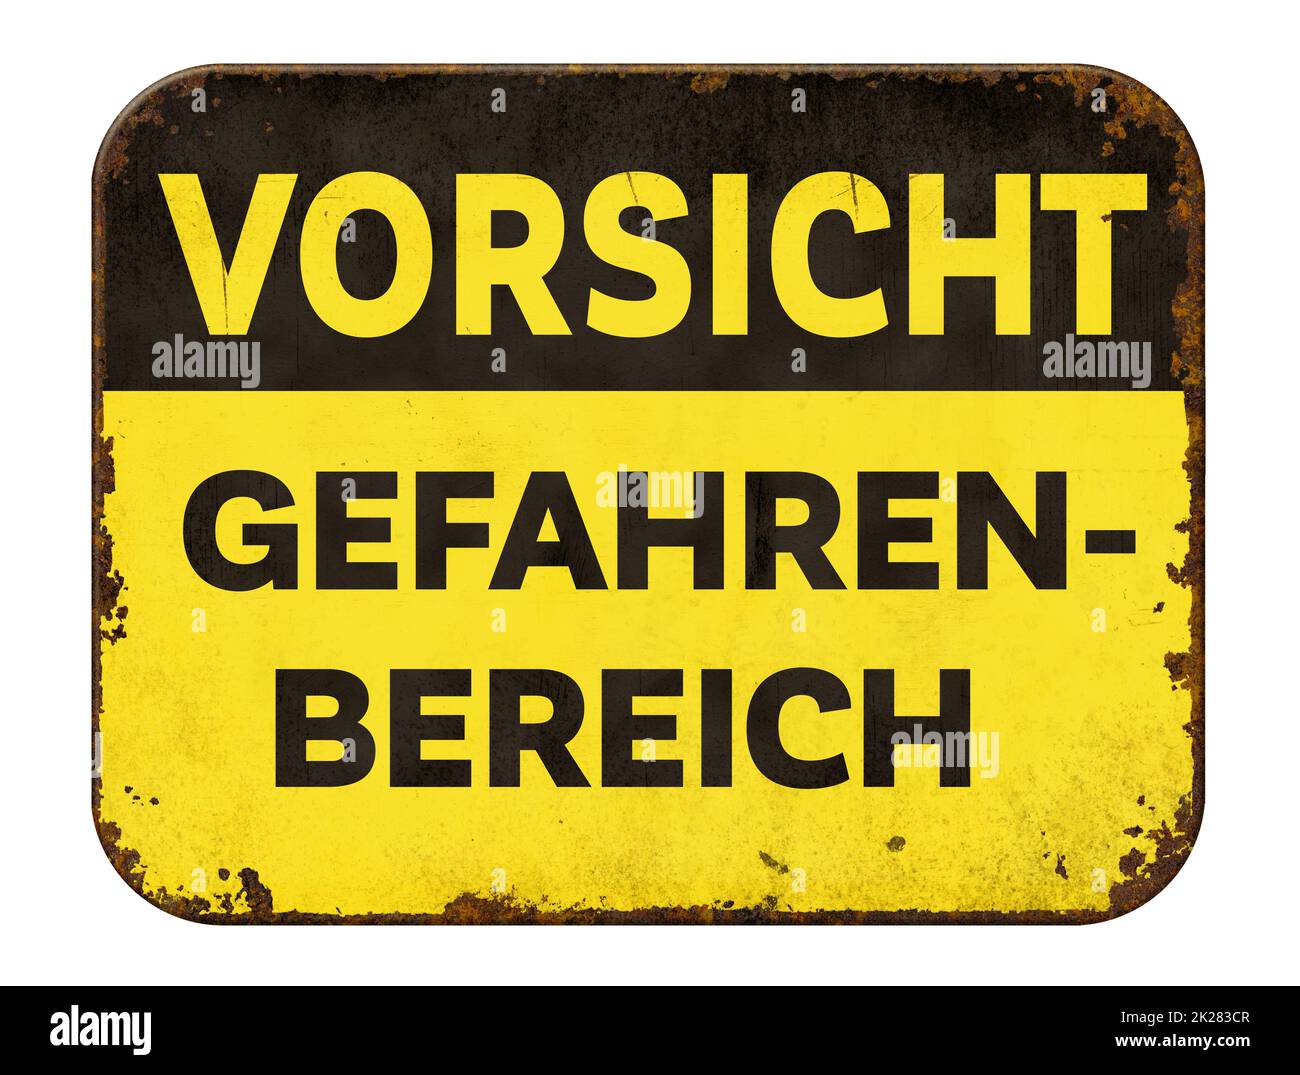 Warnschild aus Vintage-Dose auf weißem Hintergrund - Gefahrenbereich in deutsch - Gefahrenbereich Stockfoto